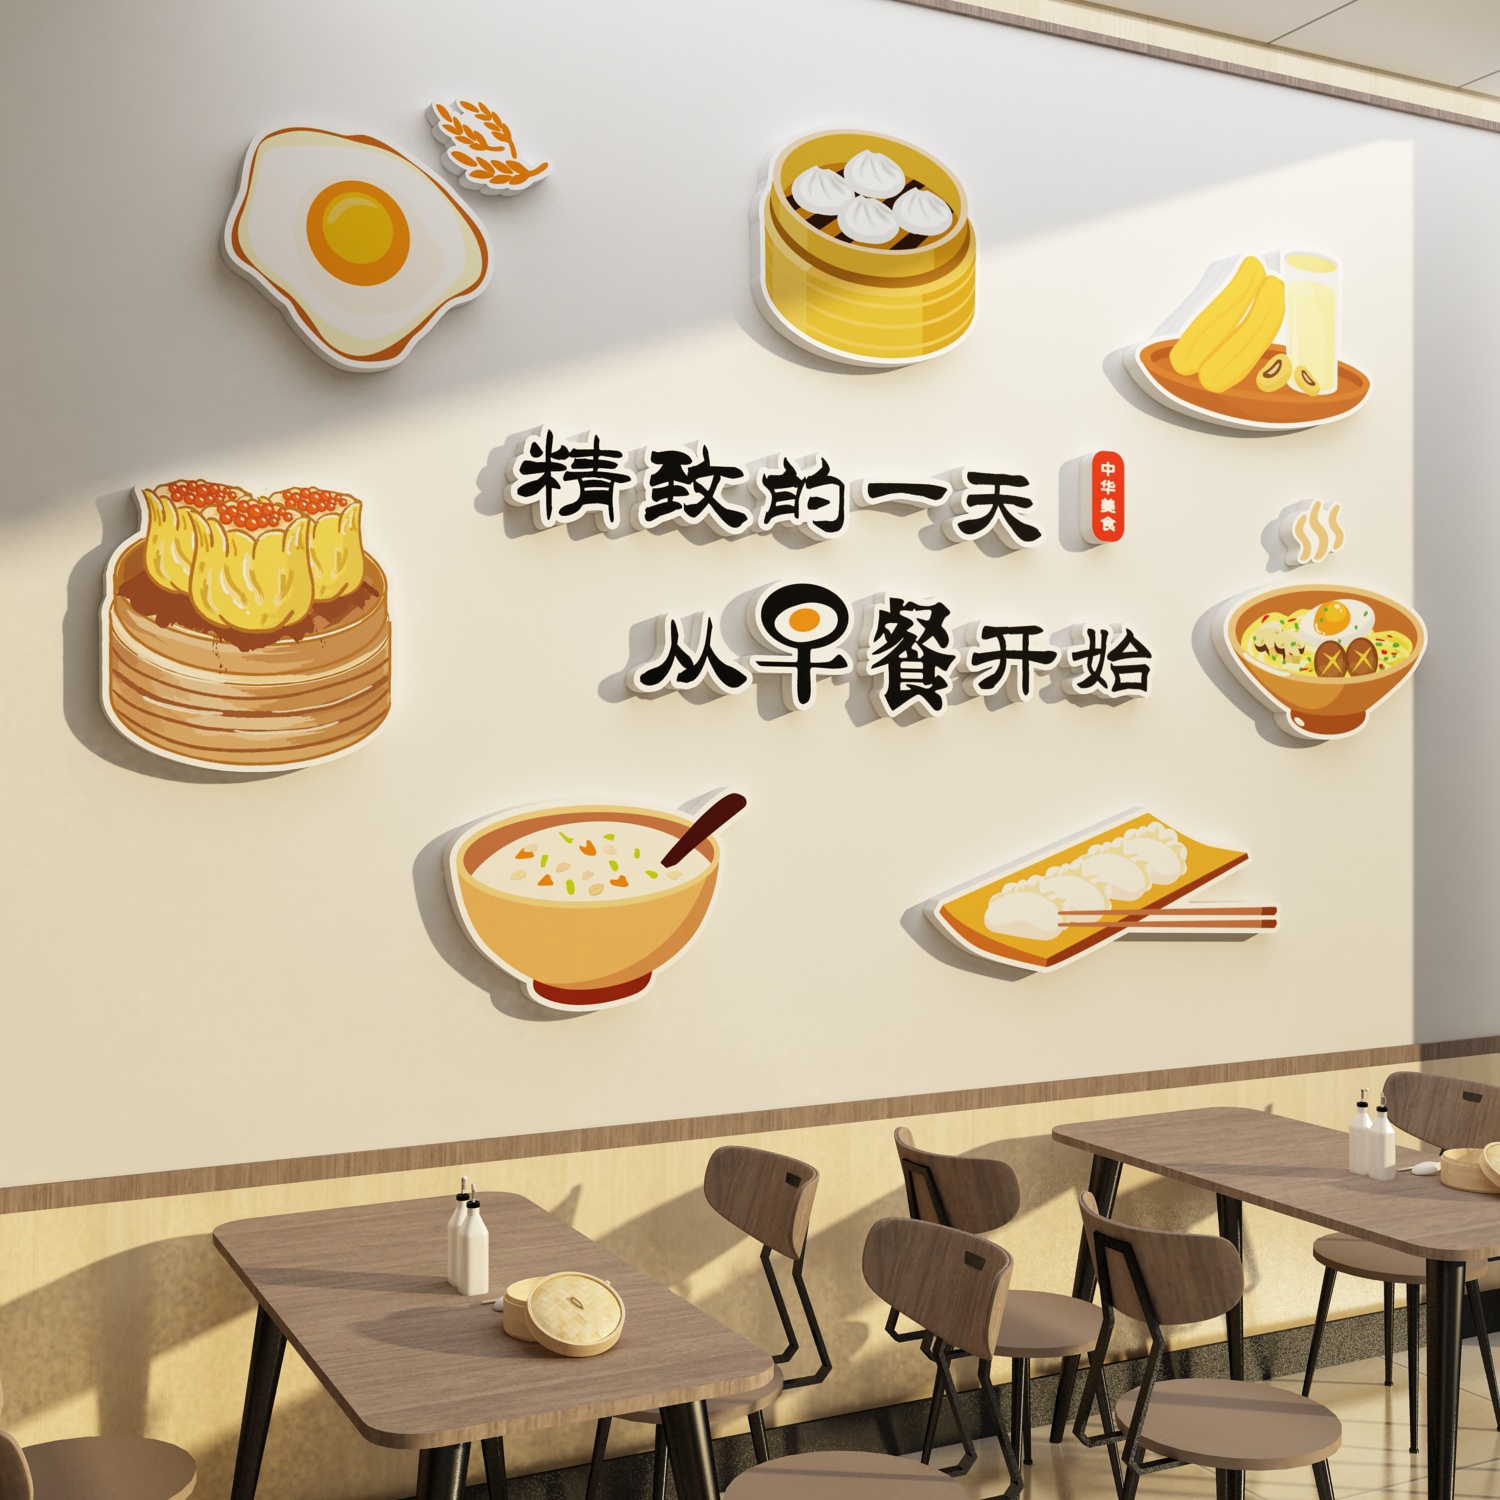 早餐店墙面装饰广告海报贴纸挂画包子饭店餐饮面馆创意布置背景墙